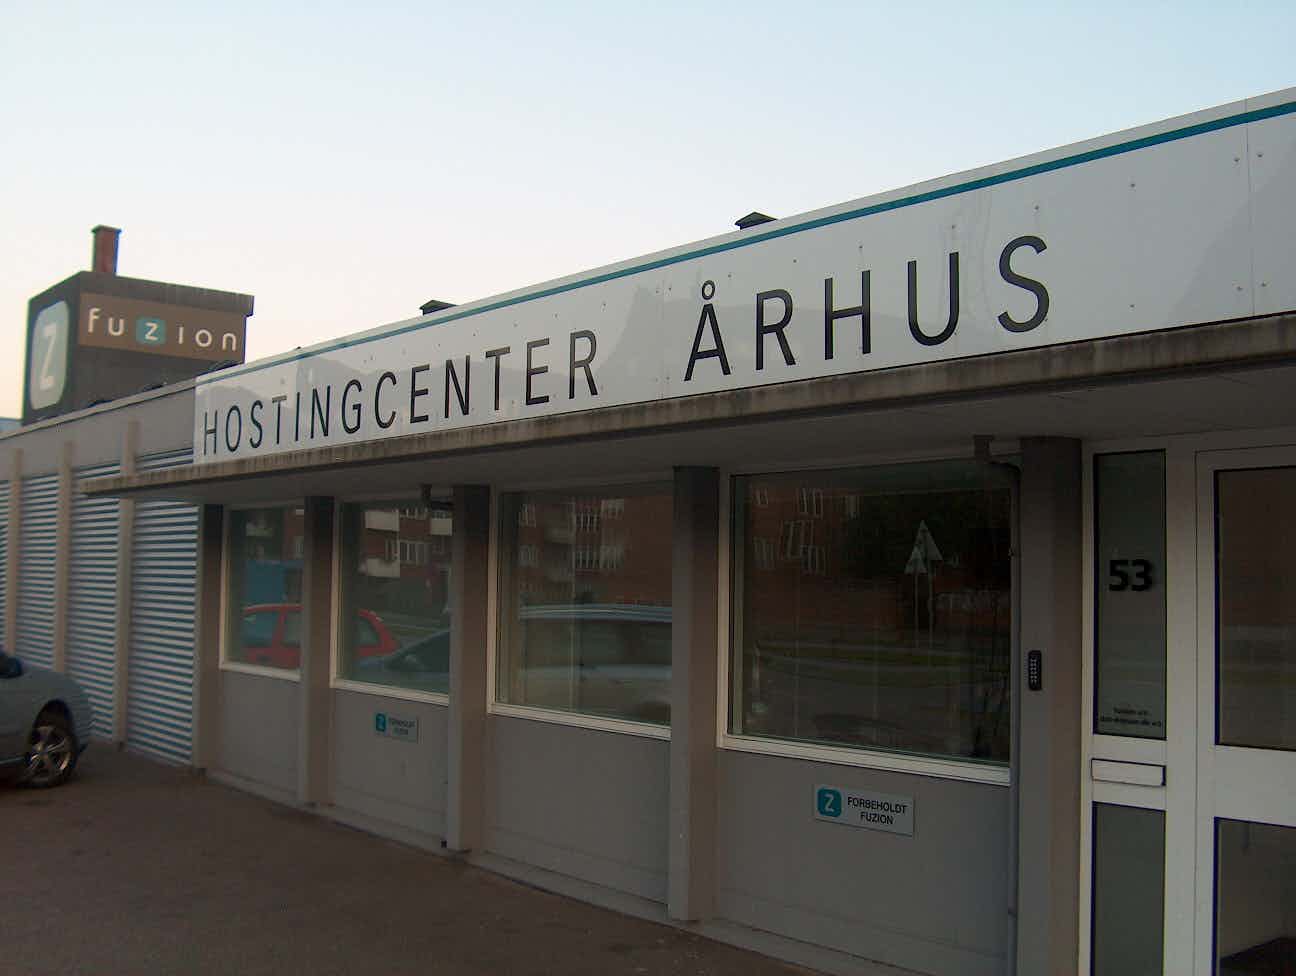 Hostingcenter Århus - Site 013